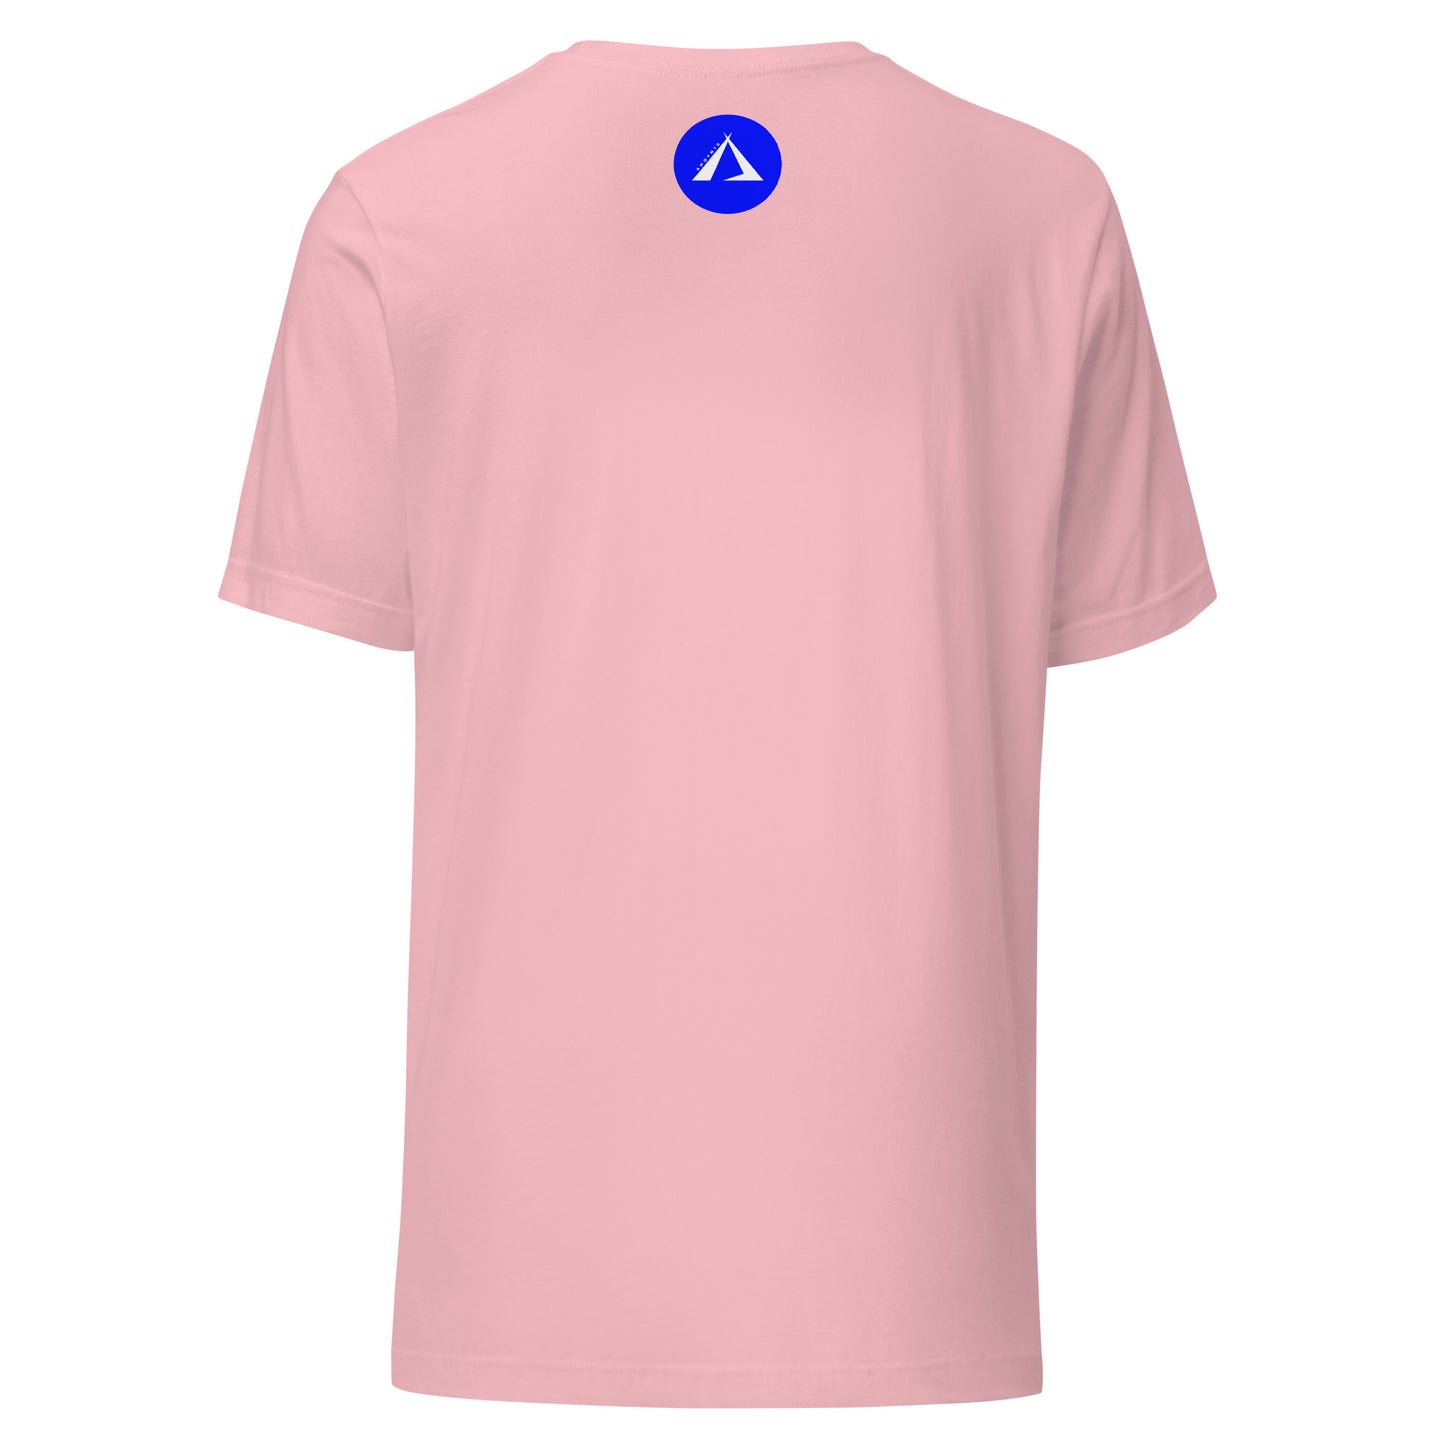 ANOYNTD LittleTeePee (Bl) Unisex t-shirt